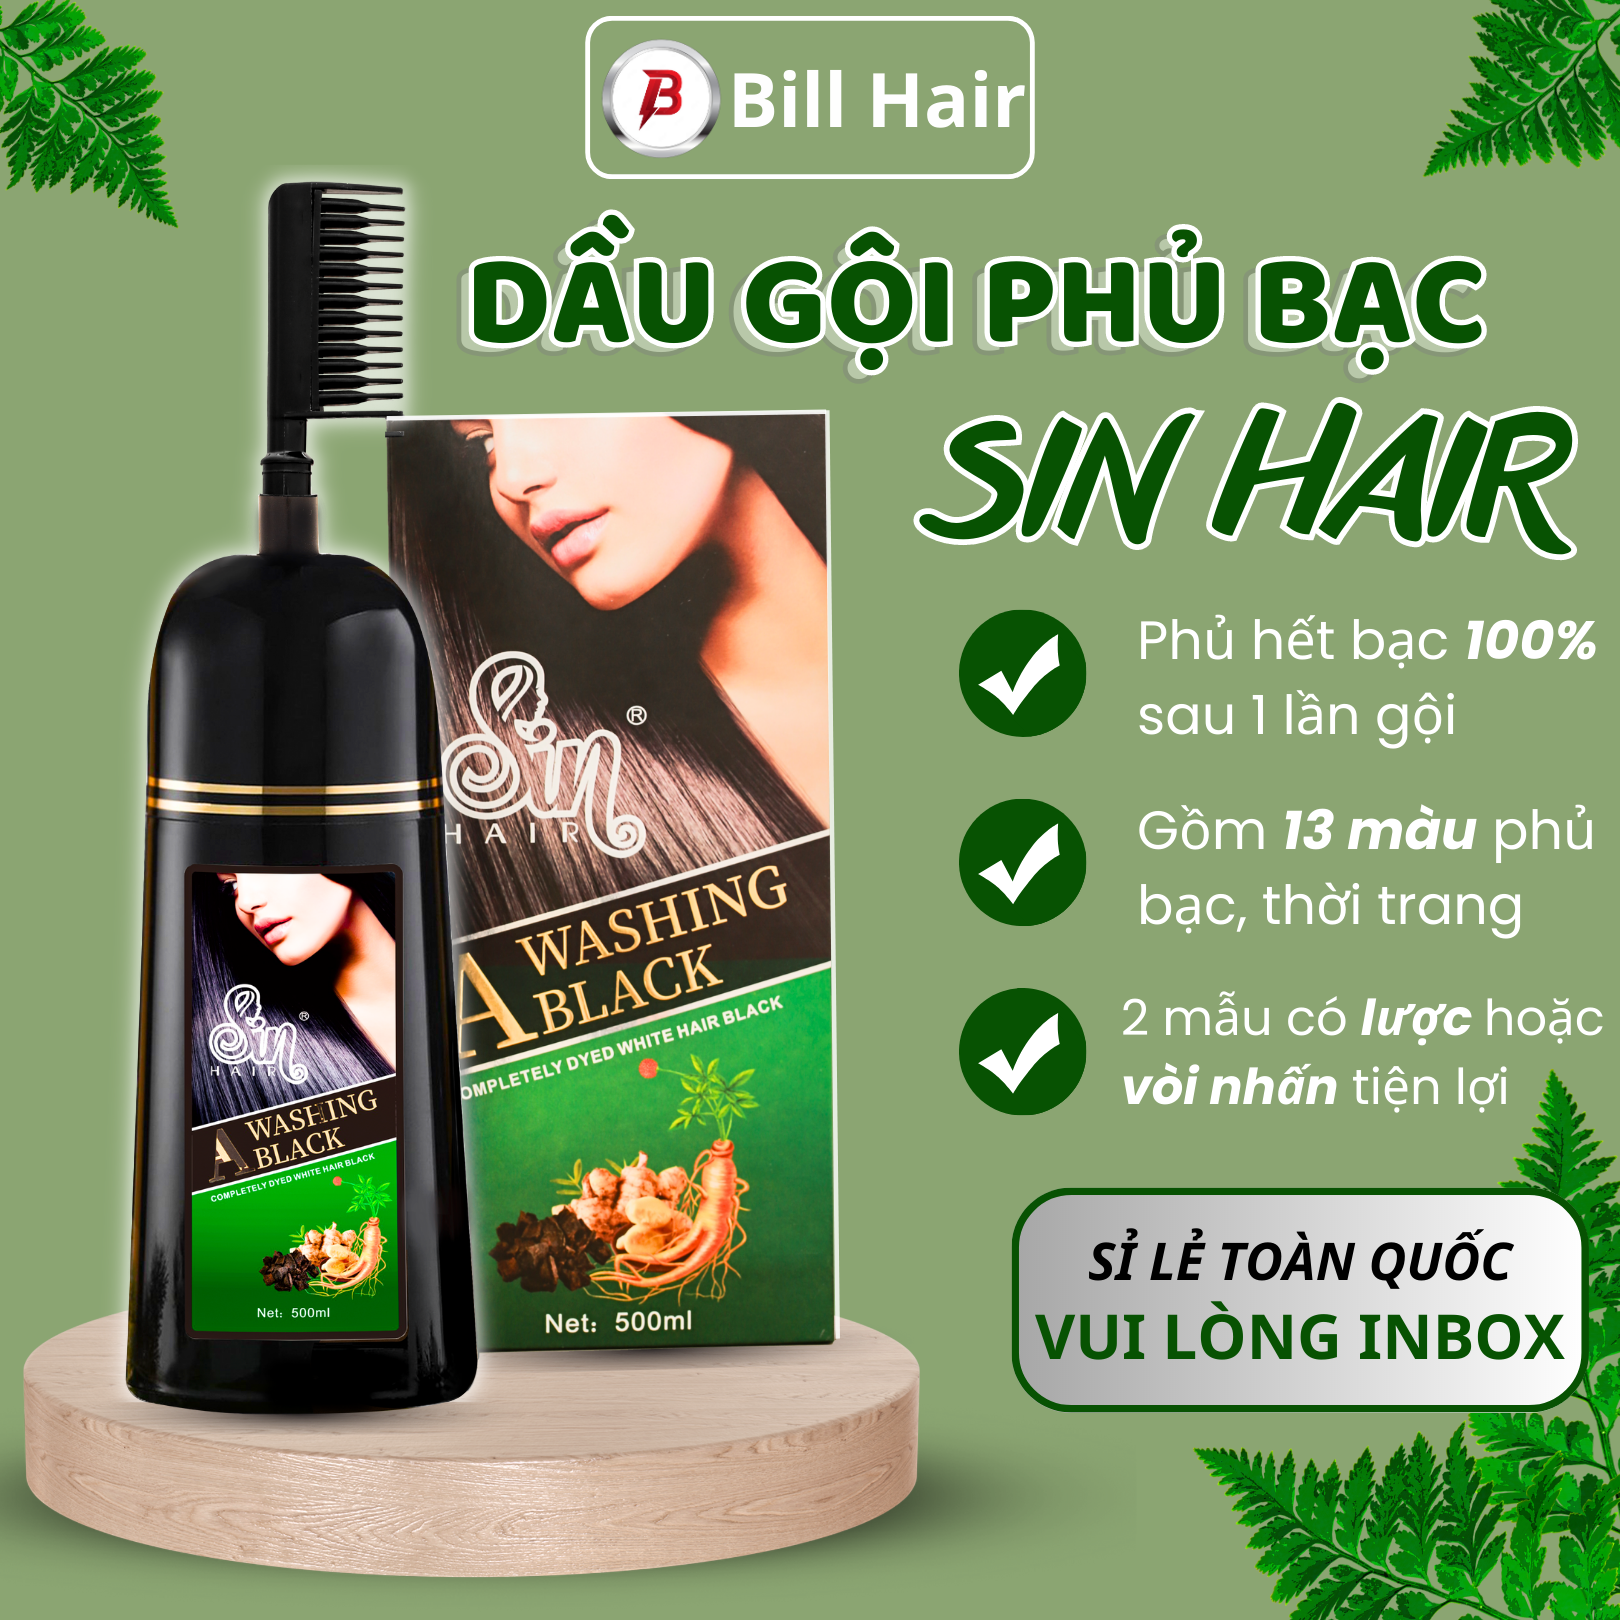 Dầu gội phủ bạc SIN HAIR chính hãng Nhật Bản, thành phần nhân sâm tự nhiên giúp đen tóc, nâu tóc từ lần gội đầu tiên | Bill hair, Billhair